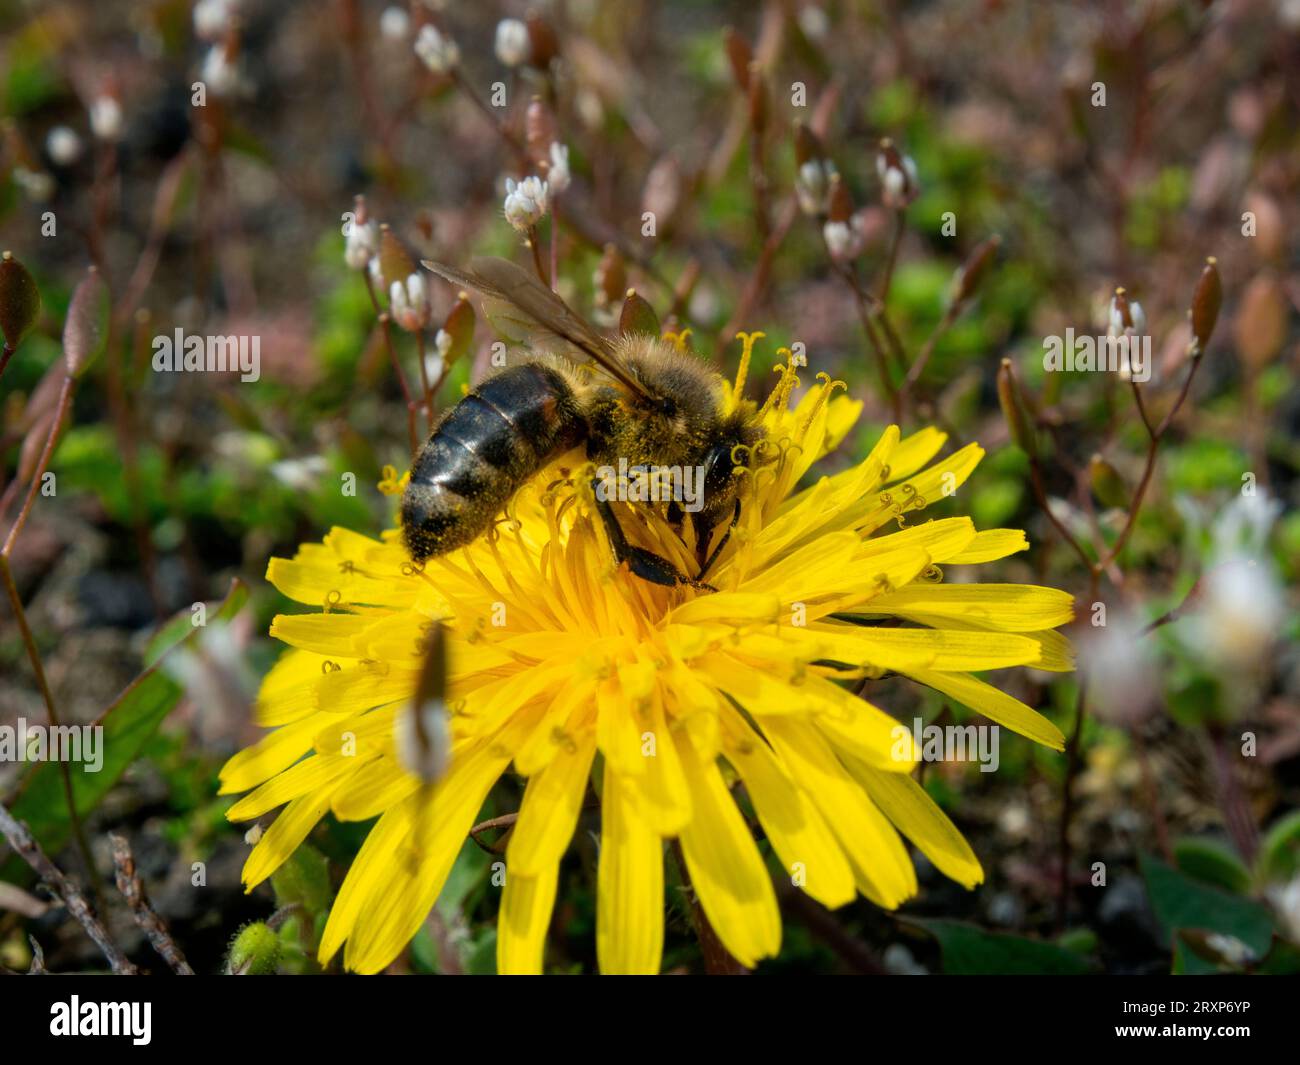 Une abeille couverte de pollen de fleur recueillant le nectar d'une fleur de pissenlit. Été, journée ensoleillée, nuances chaudes de jaune, premier plan net, backgro flou Banque D'Images